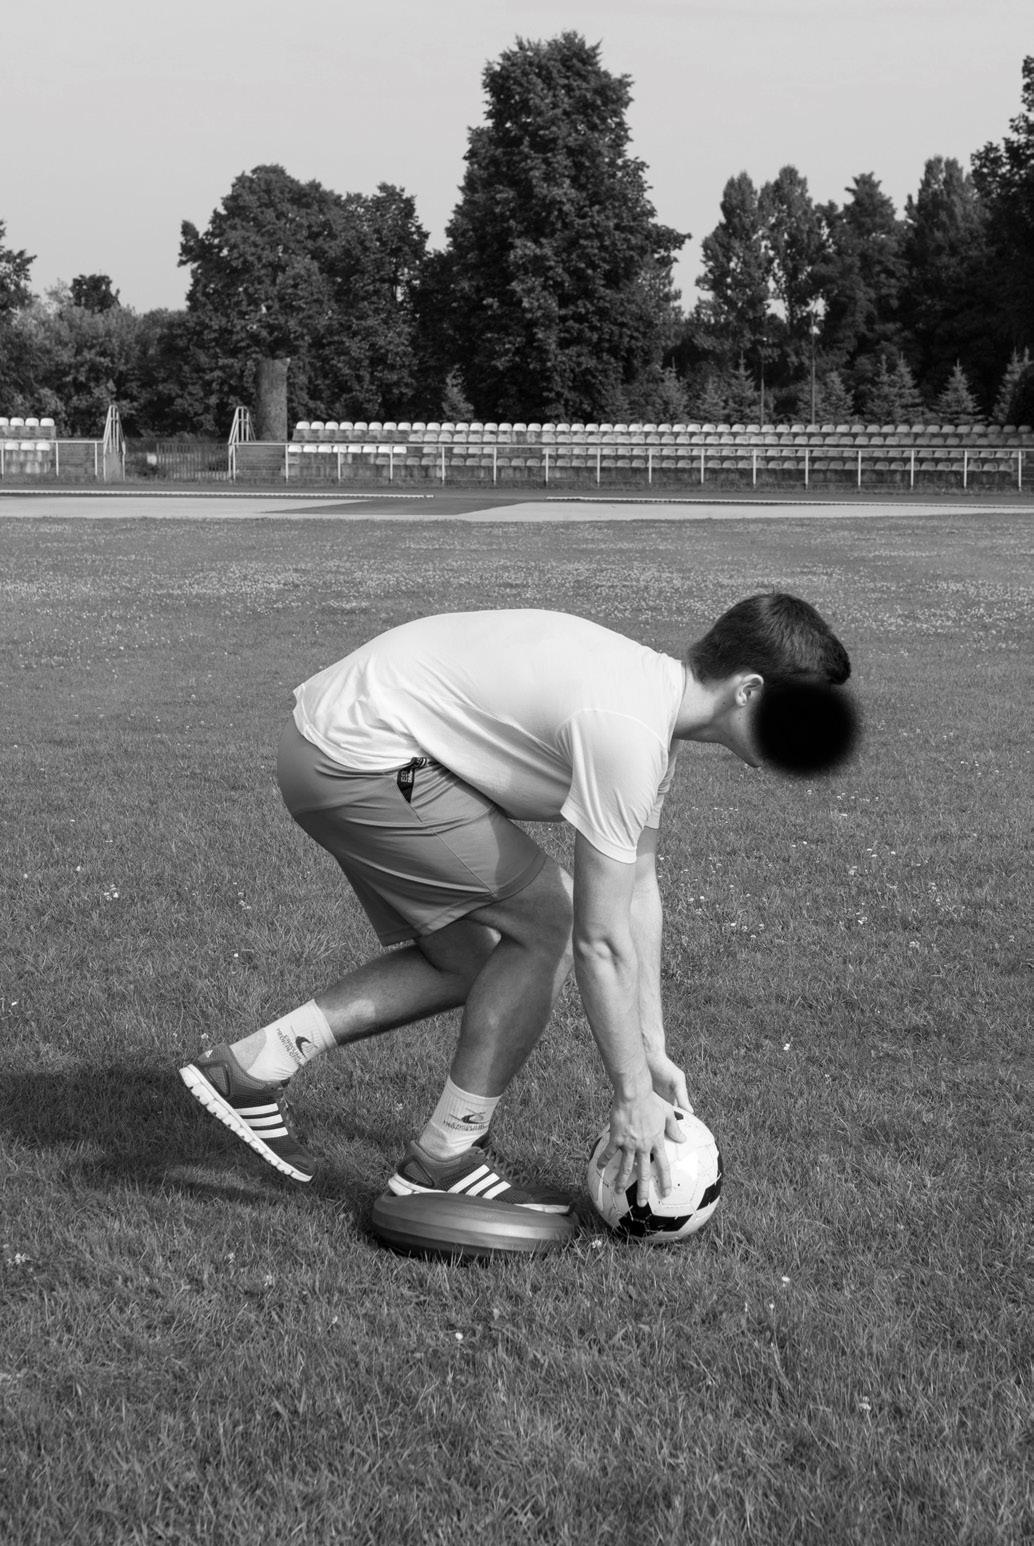 神经肌肉强化训练对职业足球运动员姿势控制能力的影响(2)